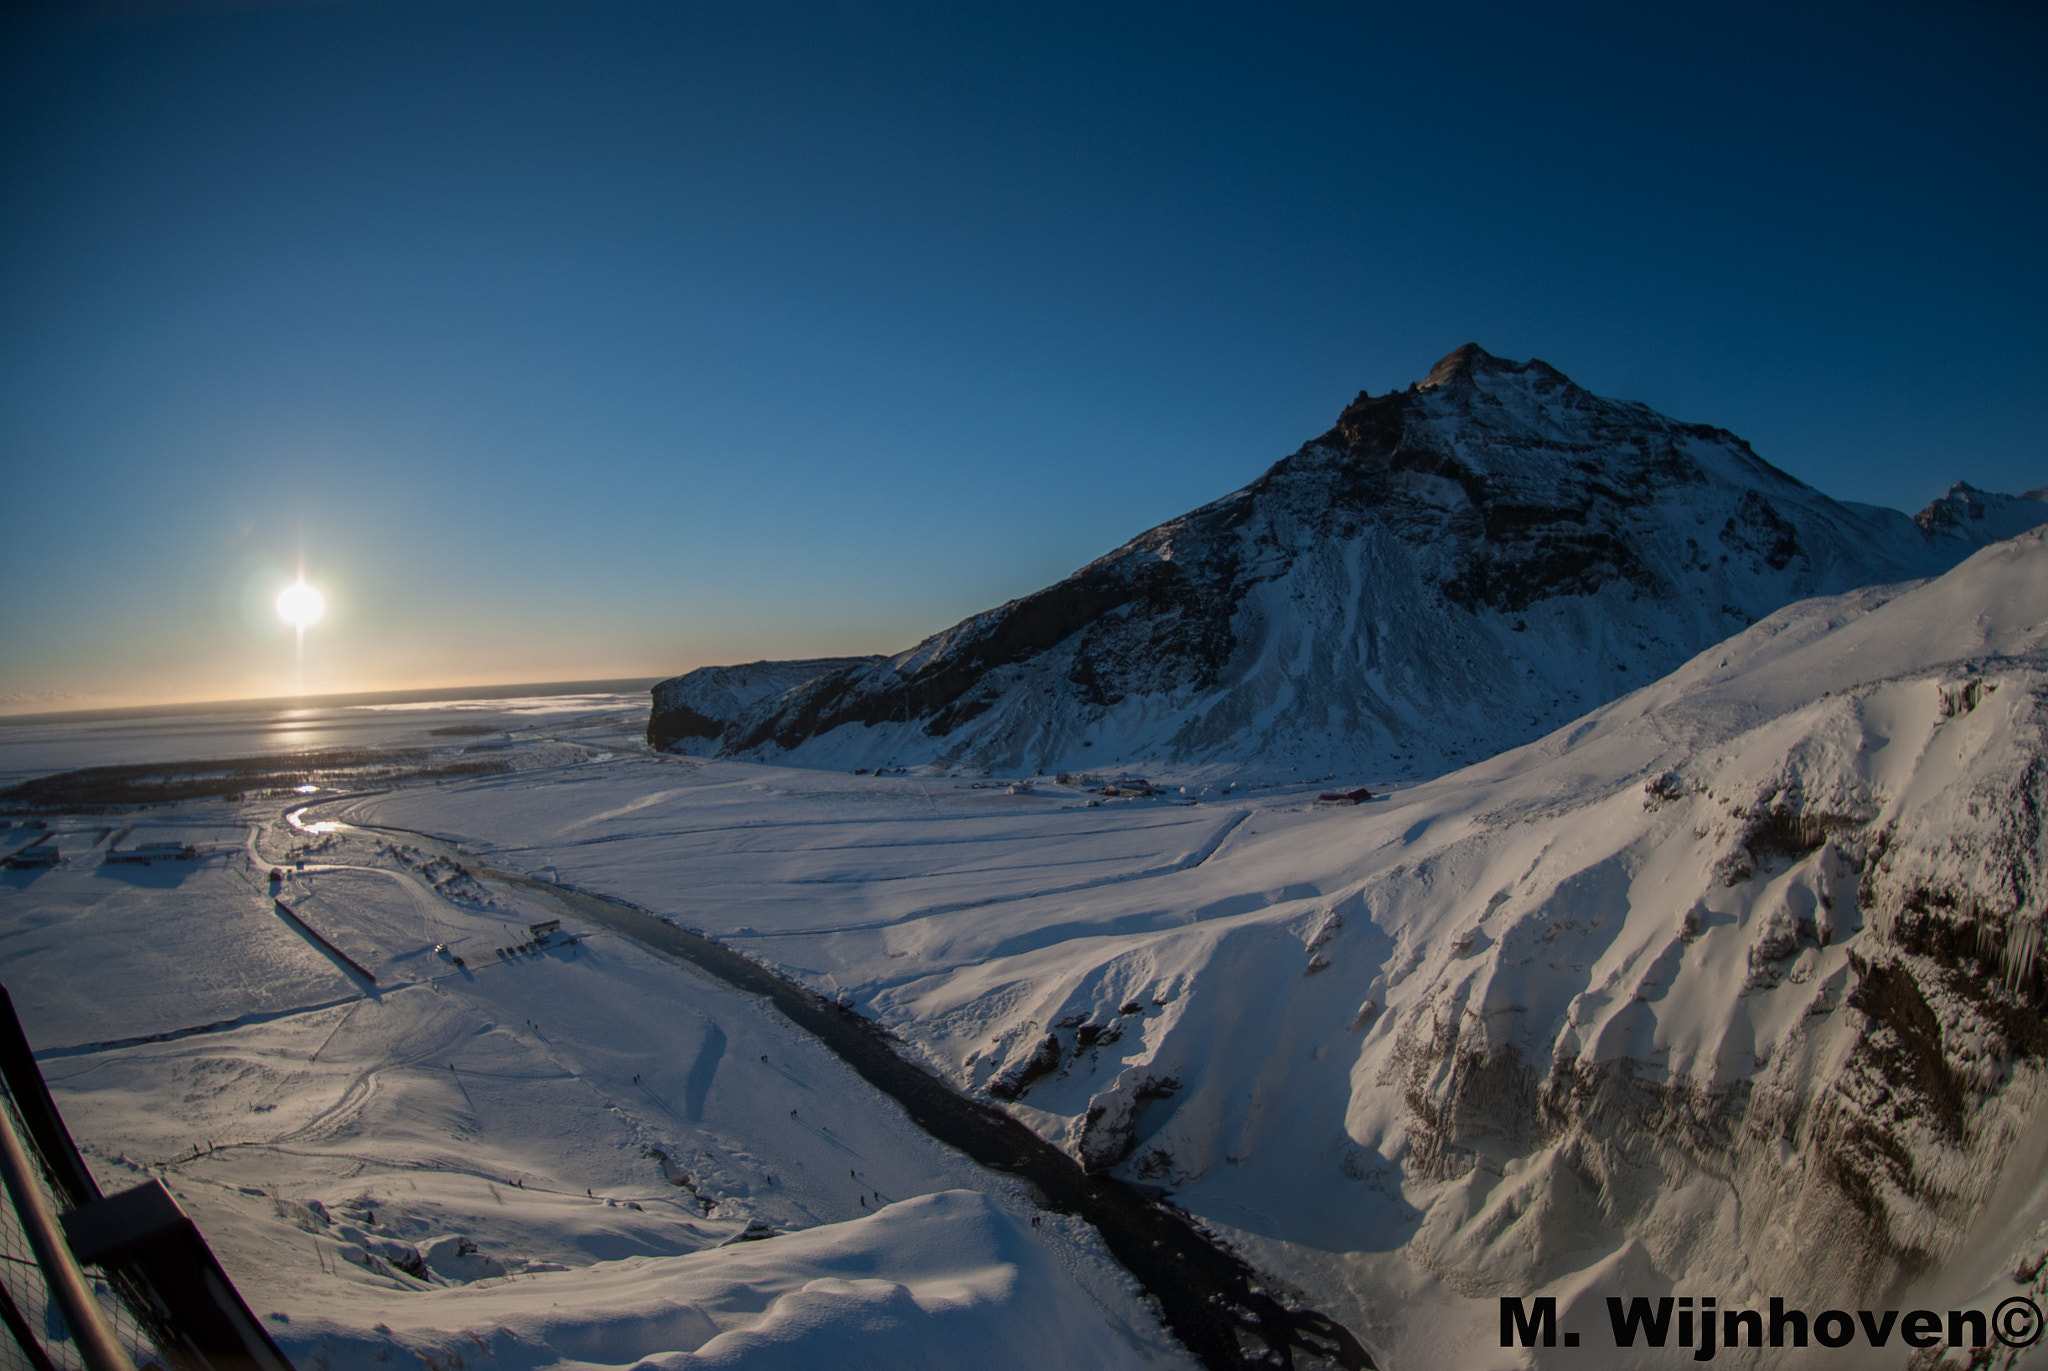 Nikon D3000 + Nikon AF DX Fisheye-Nikkor 10.5mm F2.8G ED sample photo. South iceland 2015 photography